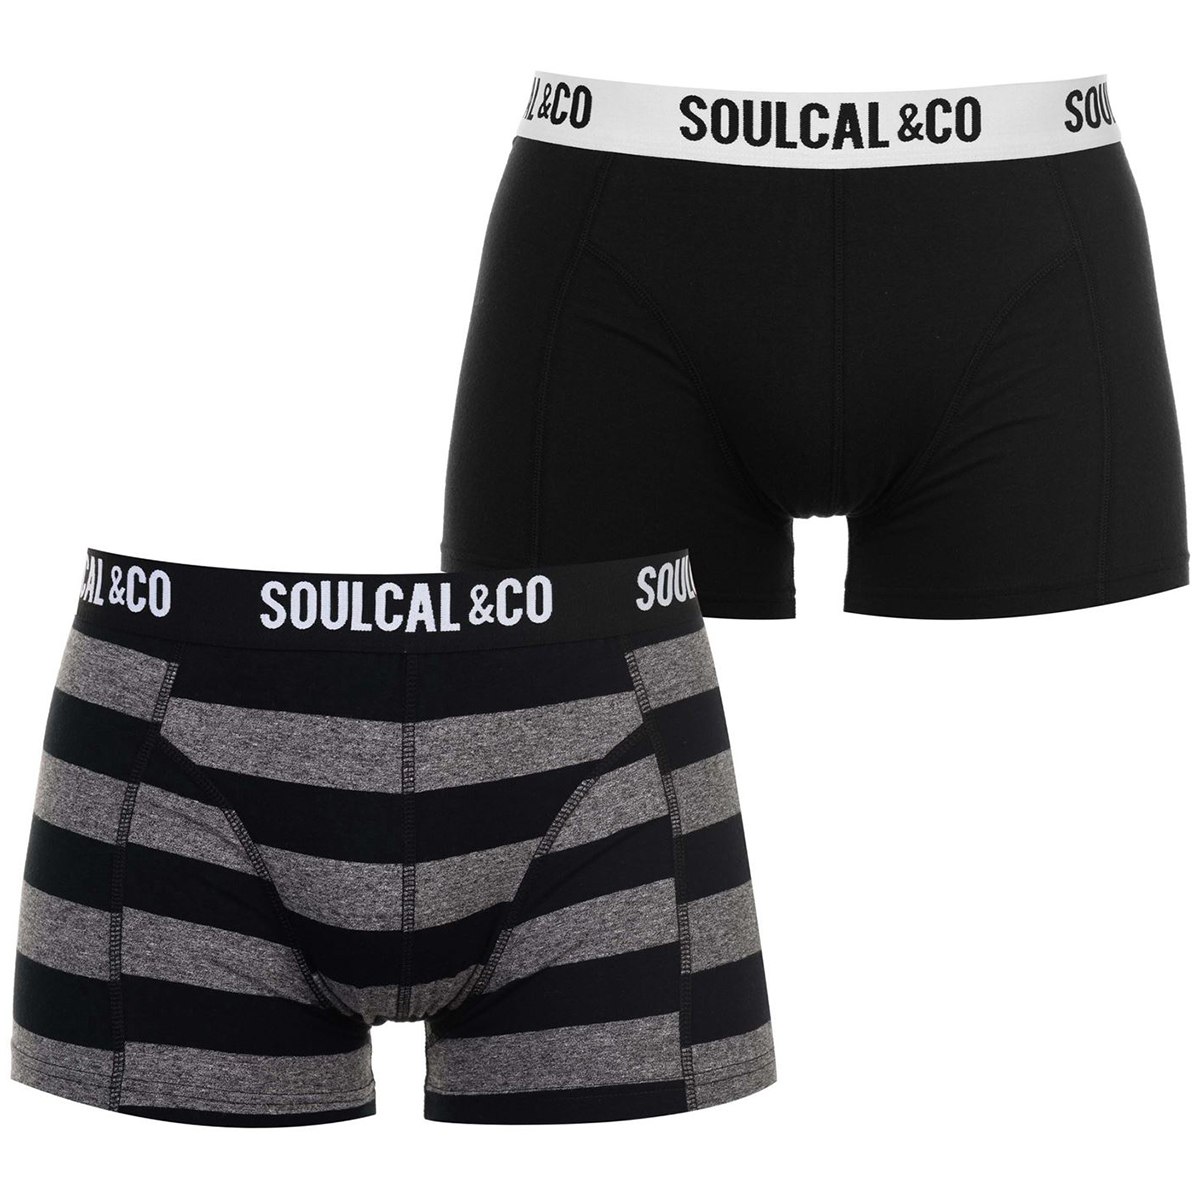 Soulcal Men's Trunks, 2-Pack - Black, L